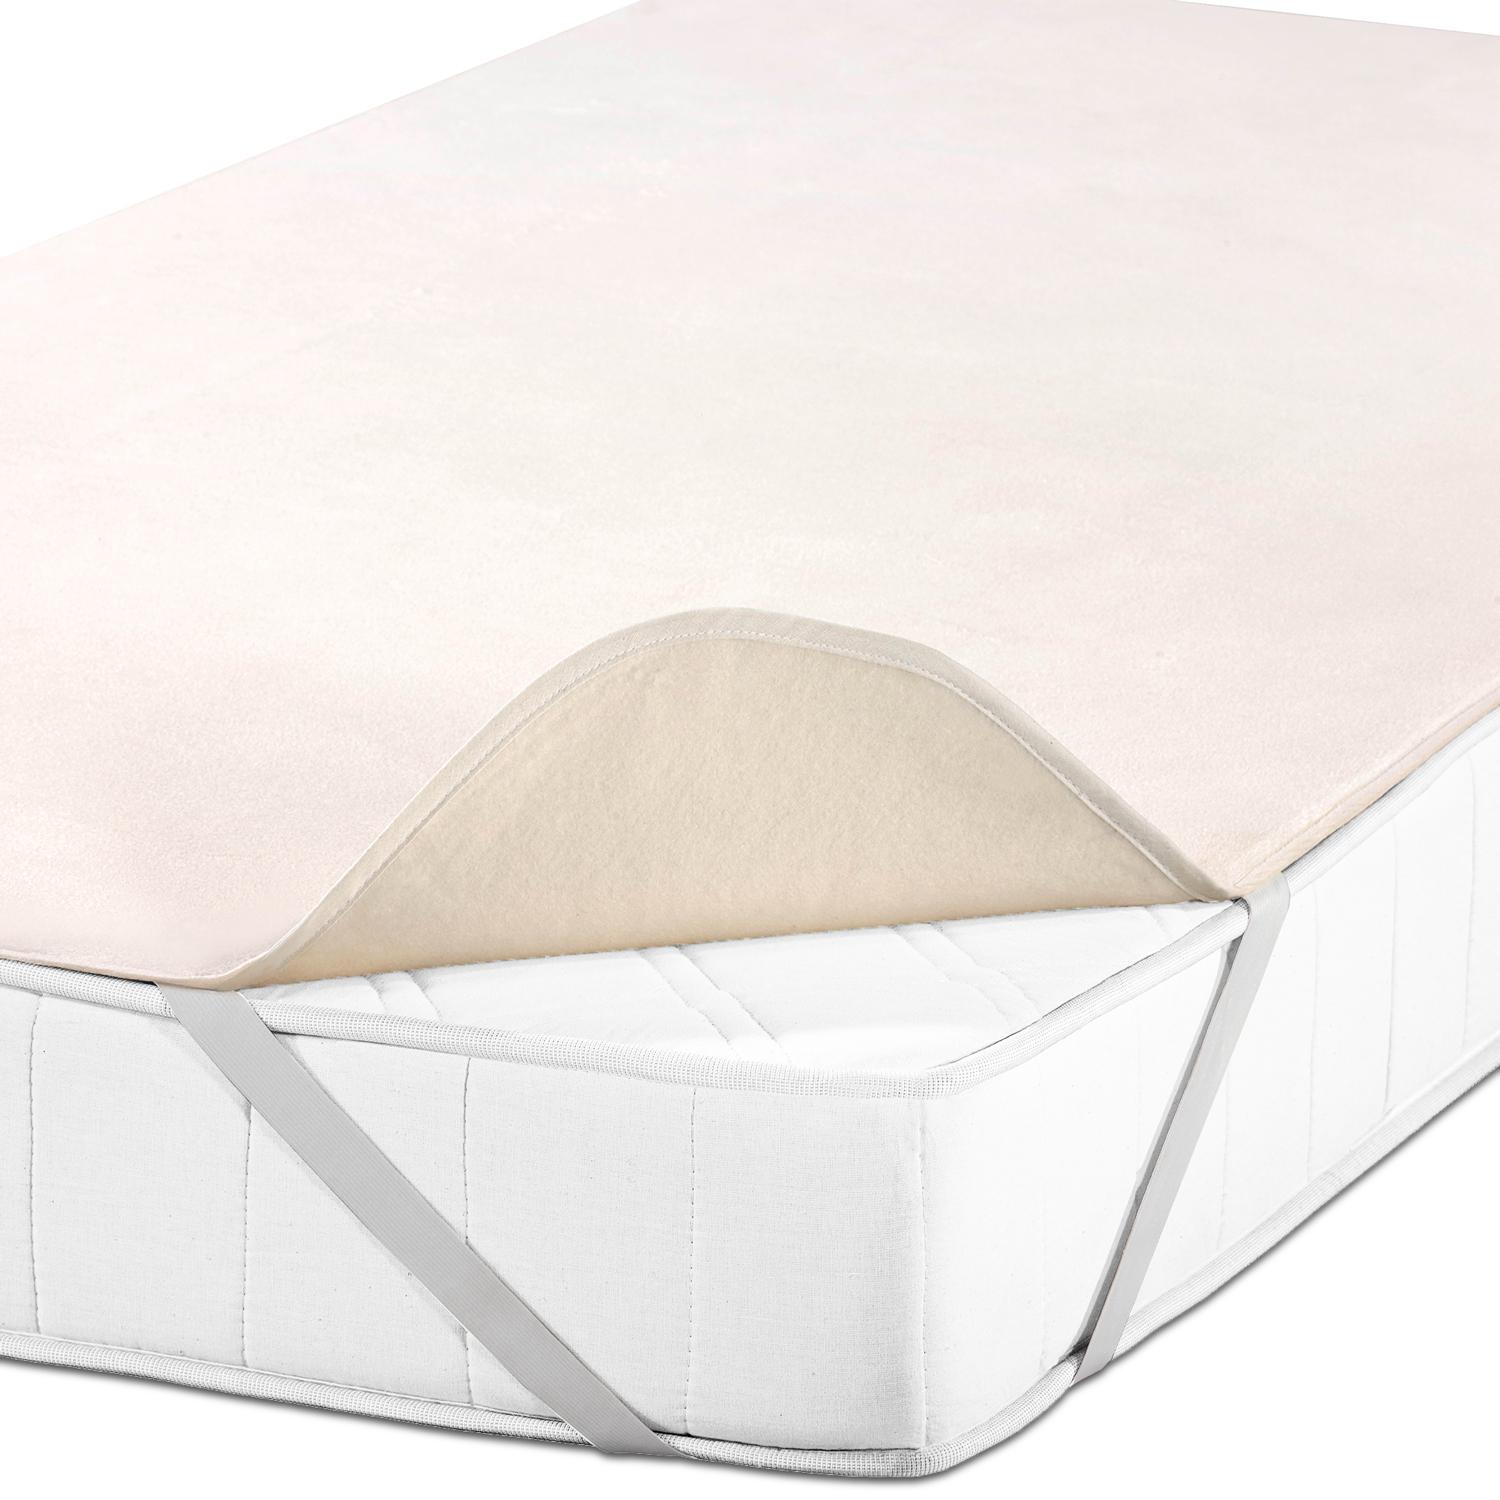 Sleezzz Basic Molton yatak koruyucu 180 x 200 cm, %100 pamuktan yapılmış yatak koruyucu, doğal renkler, sabit gerginlik